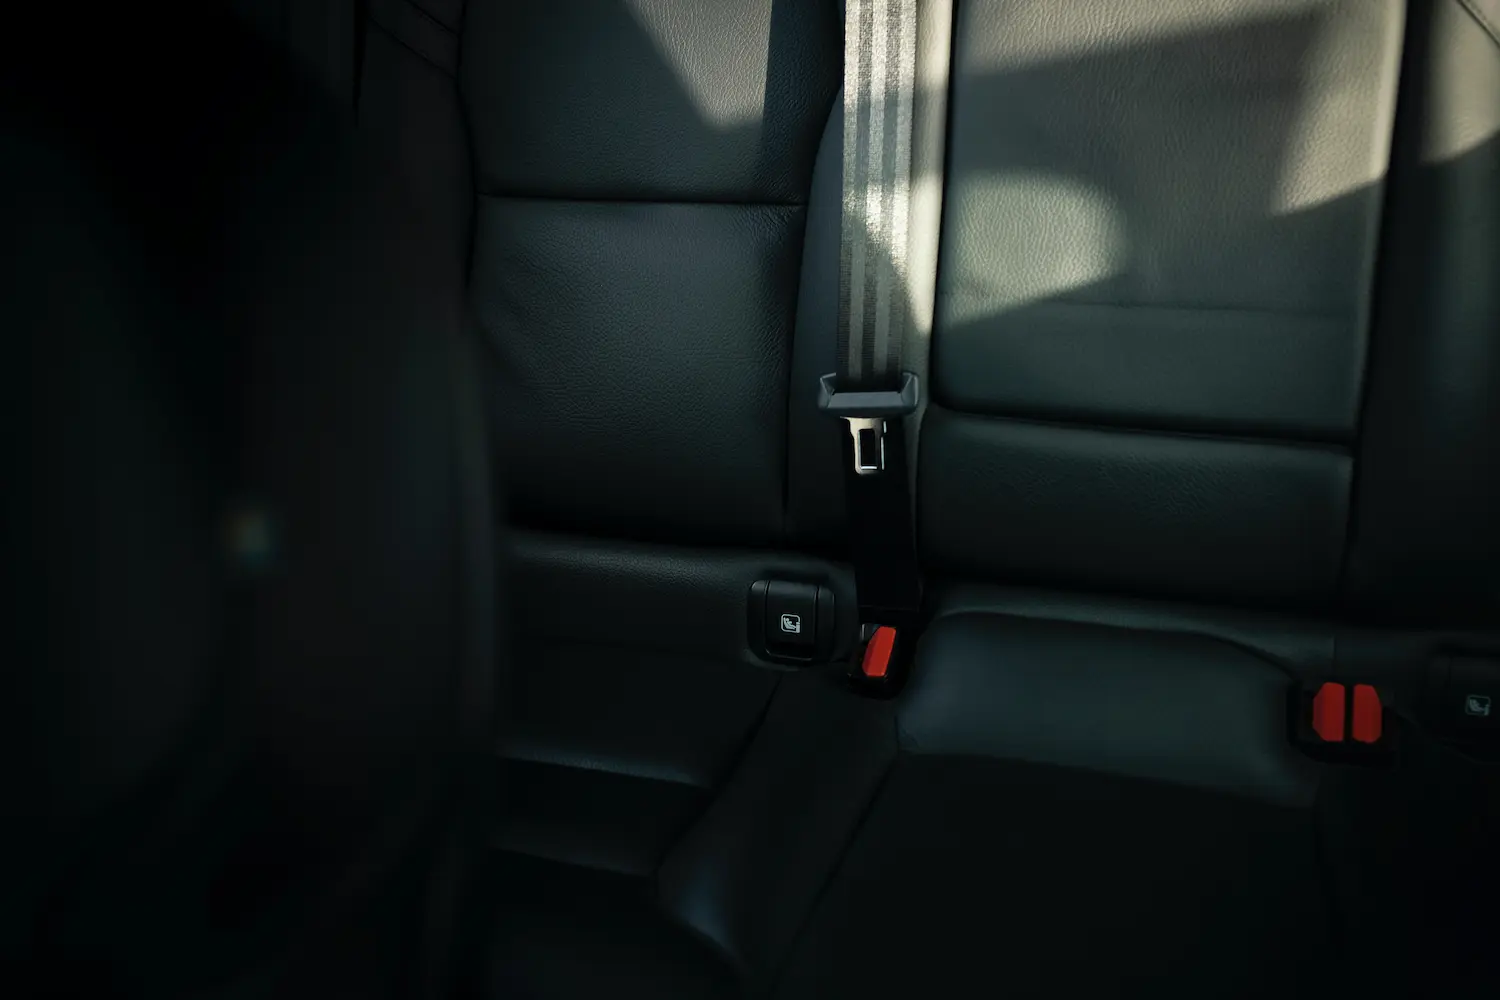  Sabuk pengaman mobil: panduan memeriksa dan mengganti drive belt. Tips Memeriksa, Mengganti, dan Merawat dengan Cermat